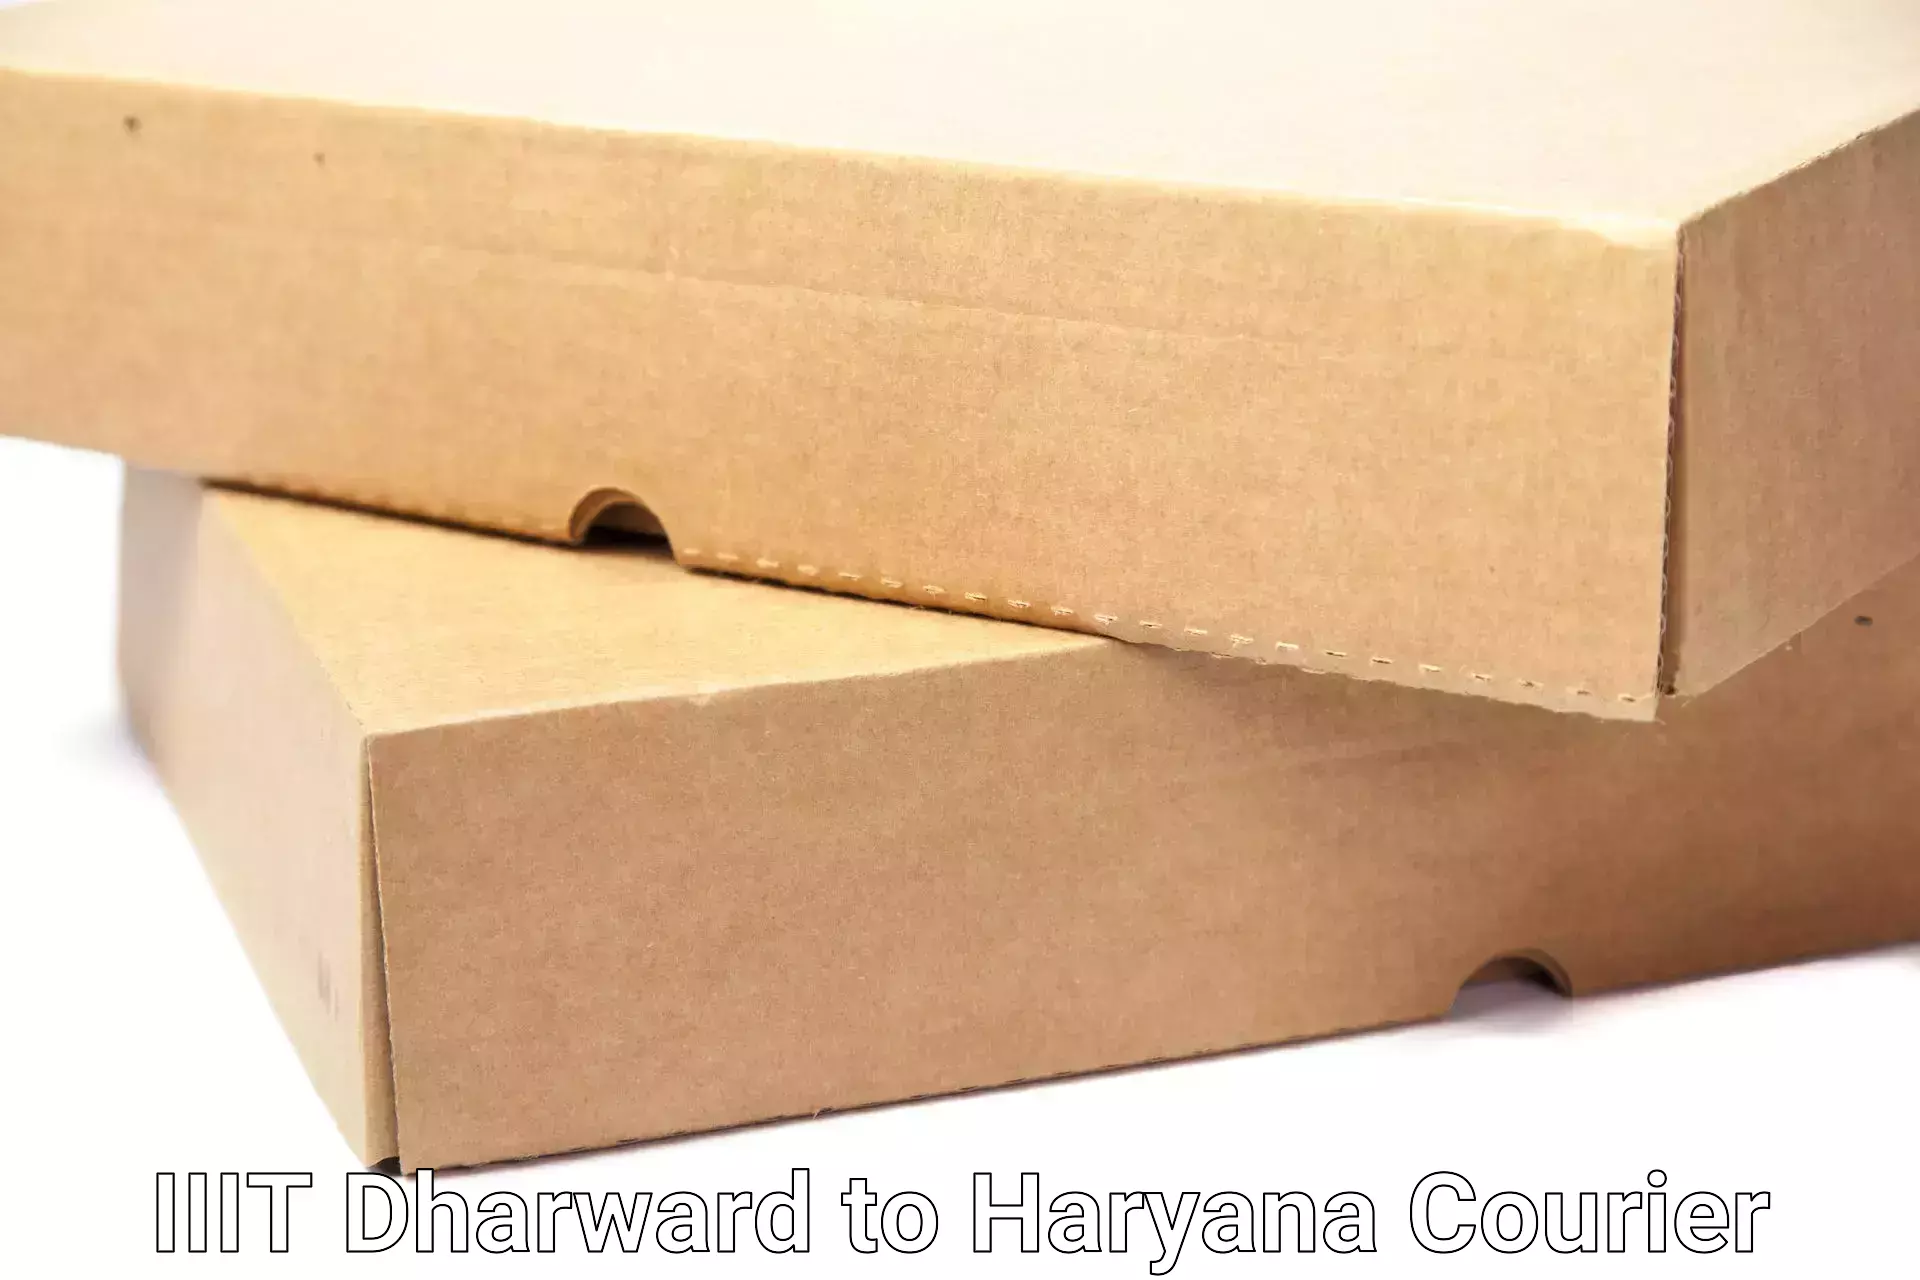 Local household movers IIIT Dharward to Haryana